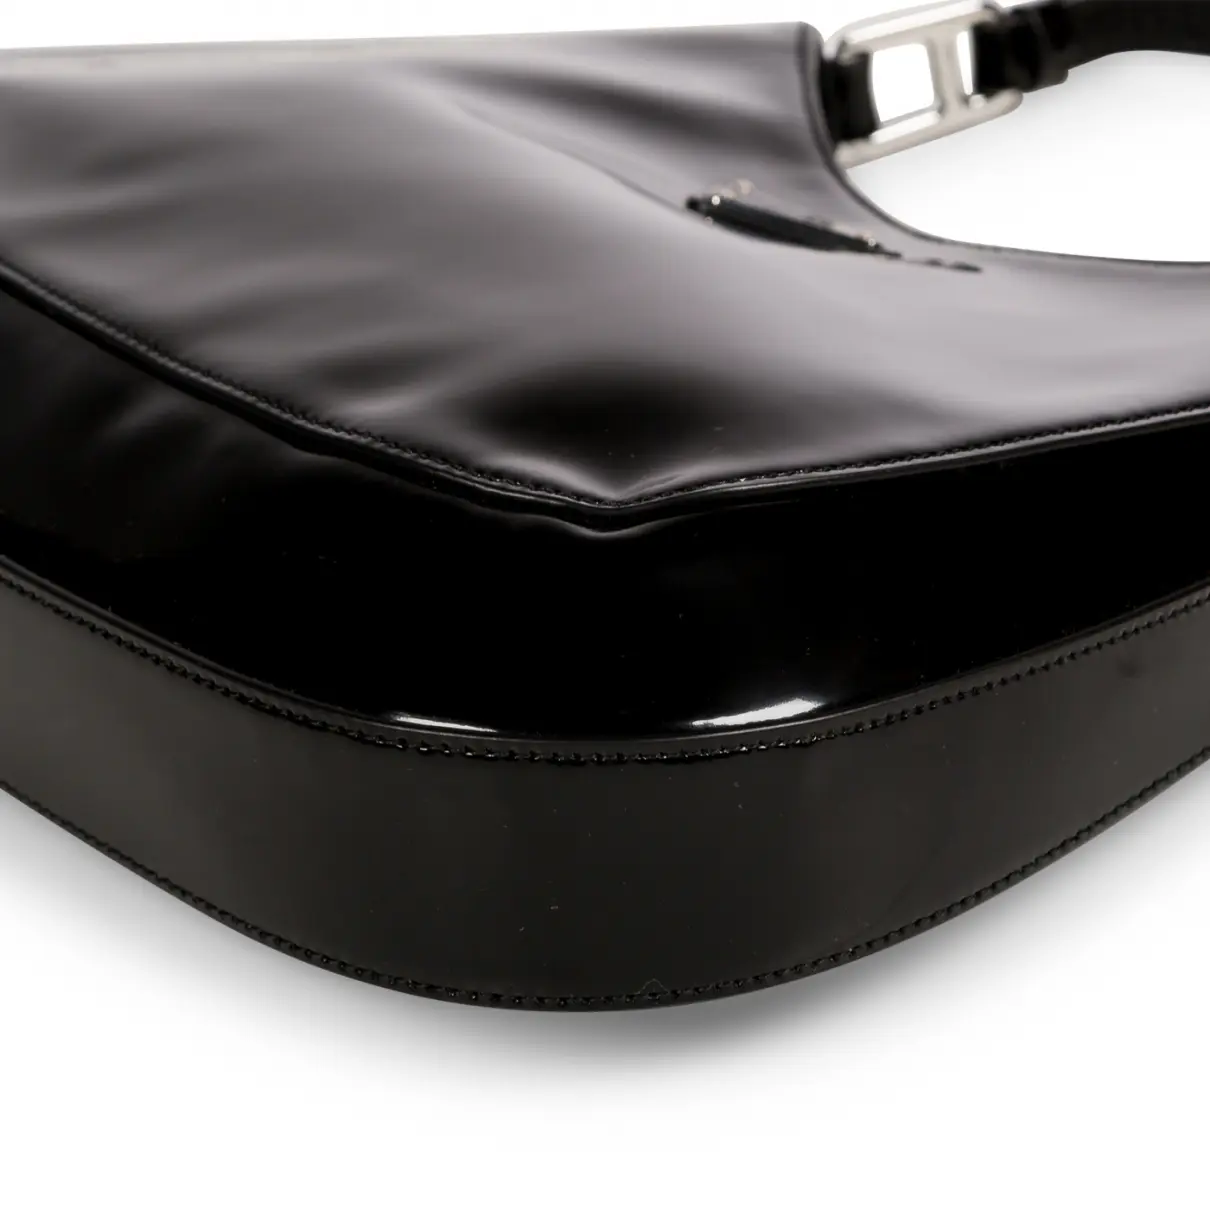 Cleo patent leather handbag Prada